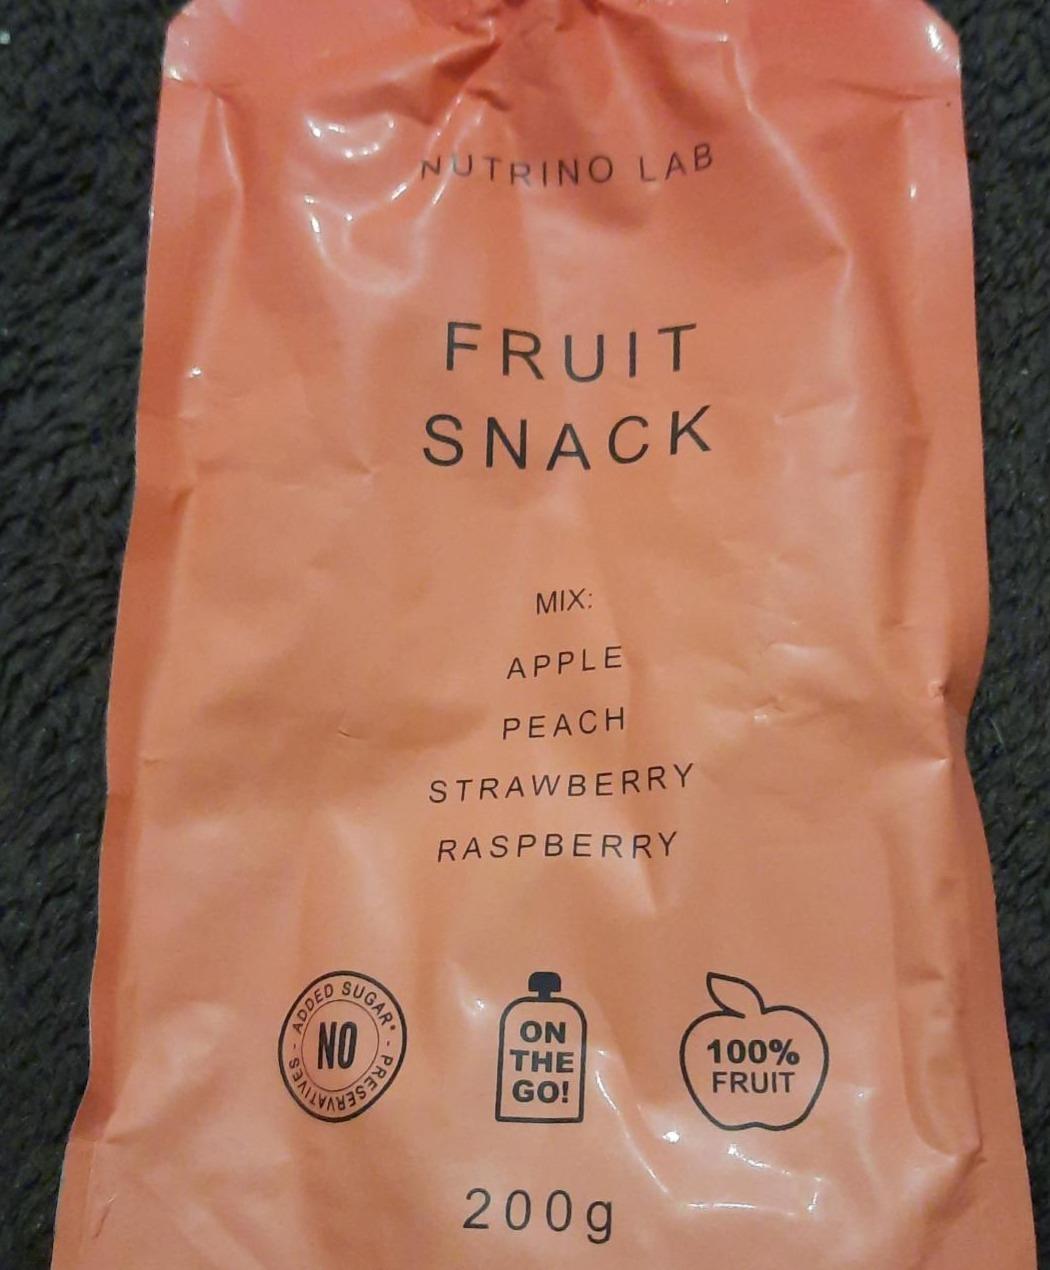 Fotografie - Fruit snack Nutrino Lab